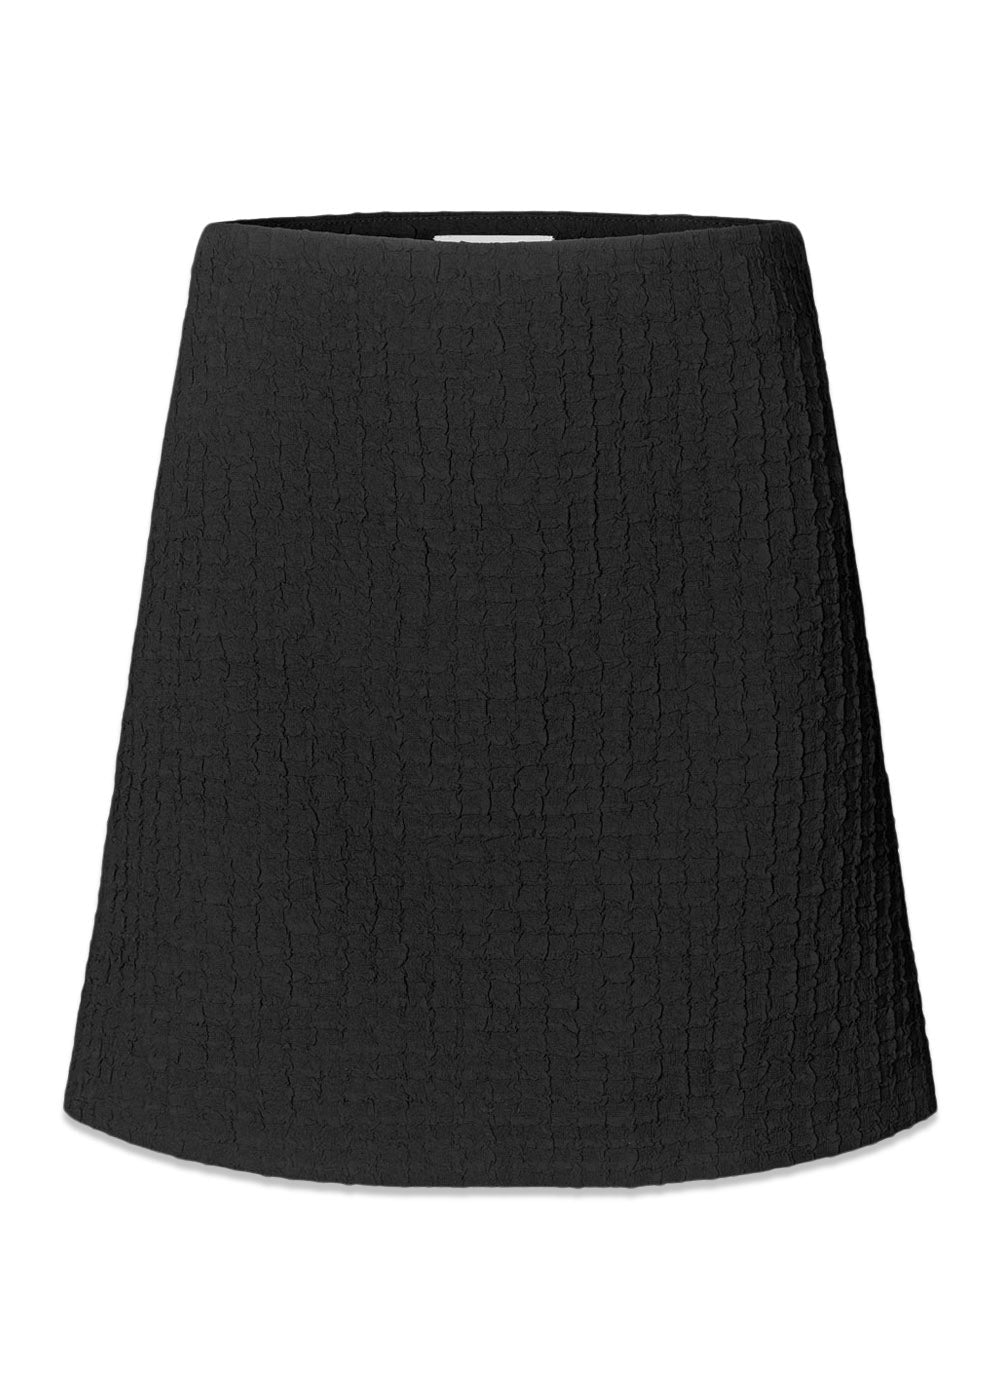 Modströms FaiMD skirt - Black. Køb skirts her.